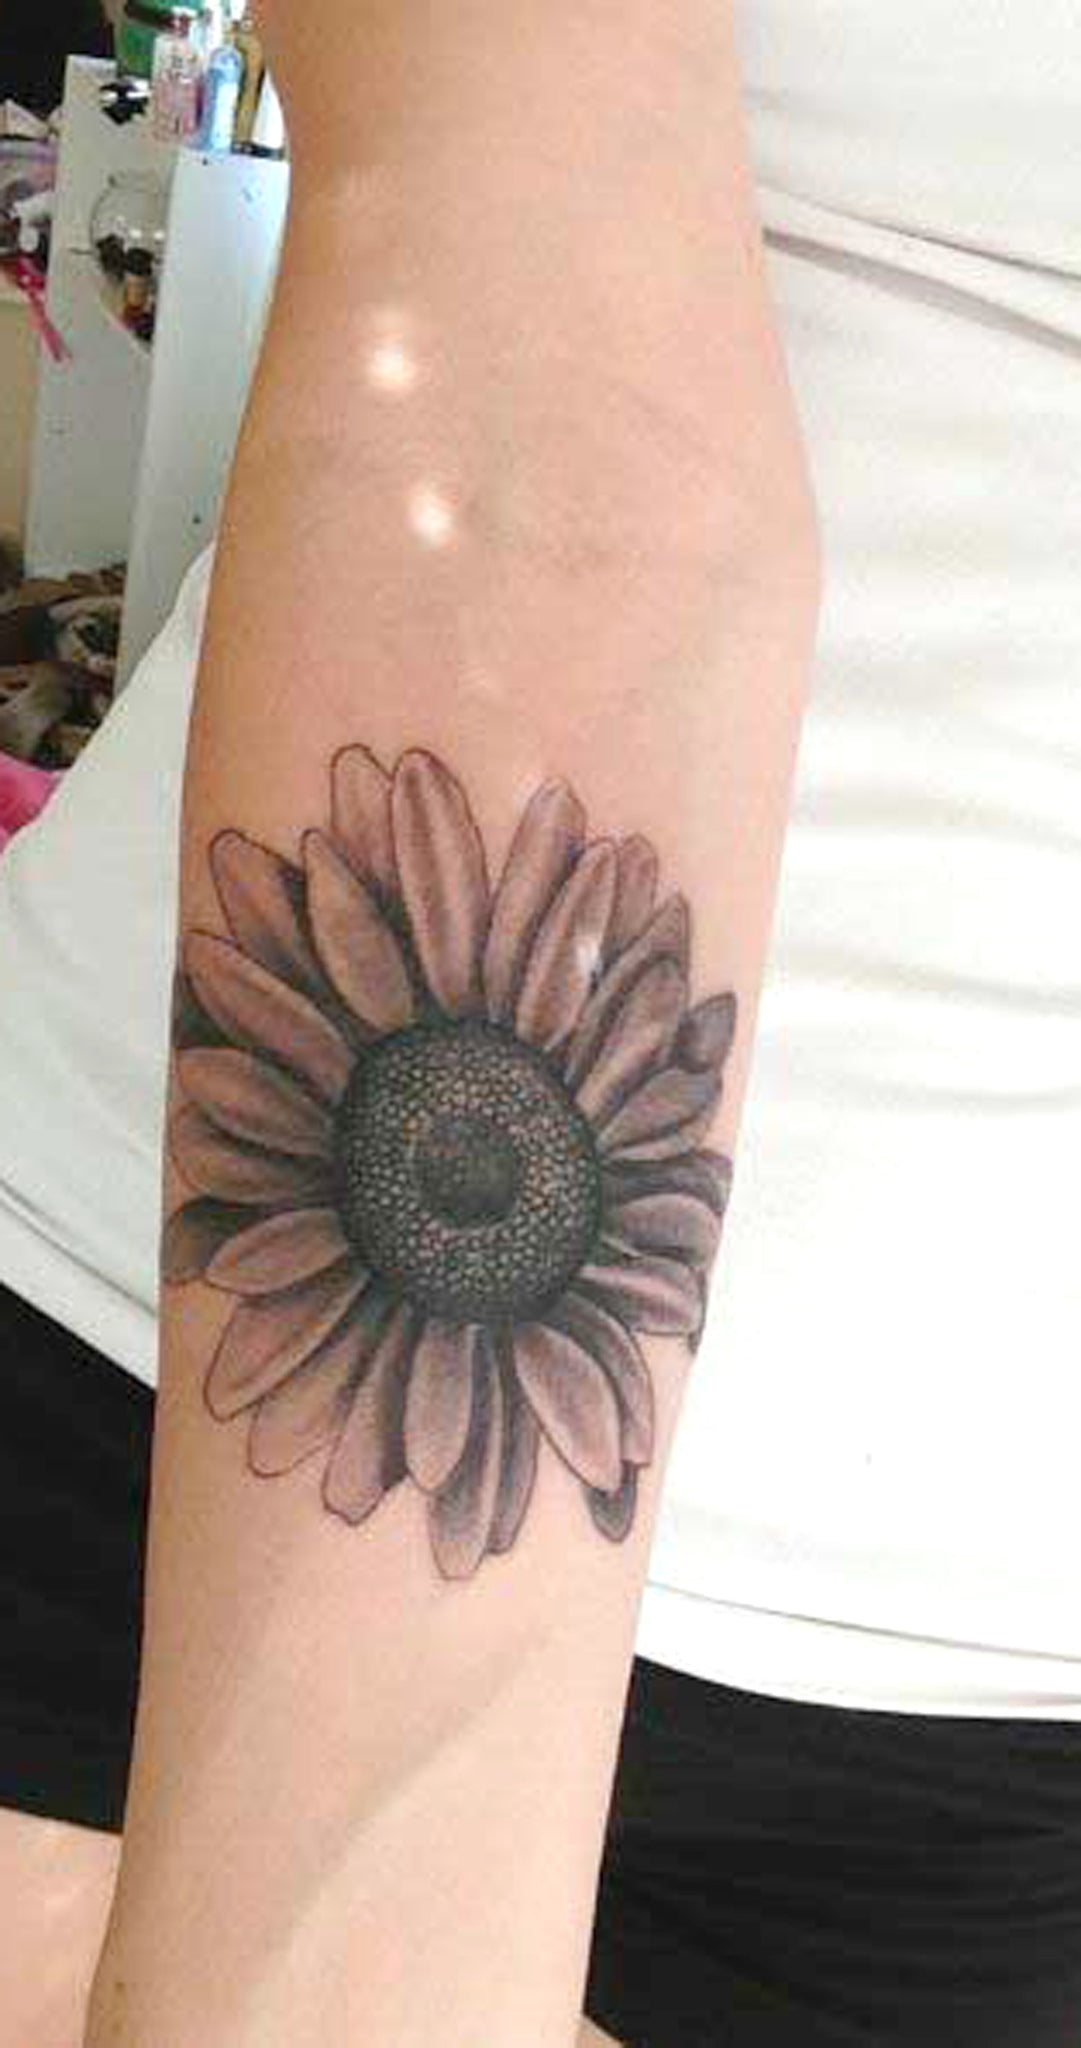 Black Realistic Sunflower Forearm Tattoo Ideas for Women - Floral Flower Vintage Arm Sleeve Tat -  idées de tatouage de l'avant-bras de tournesol - www.MyBodiArt.com